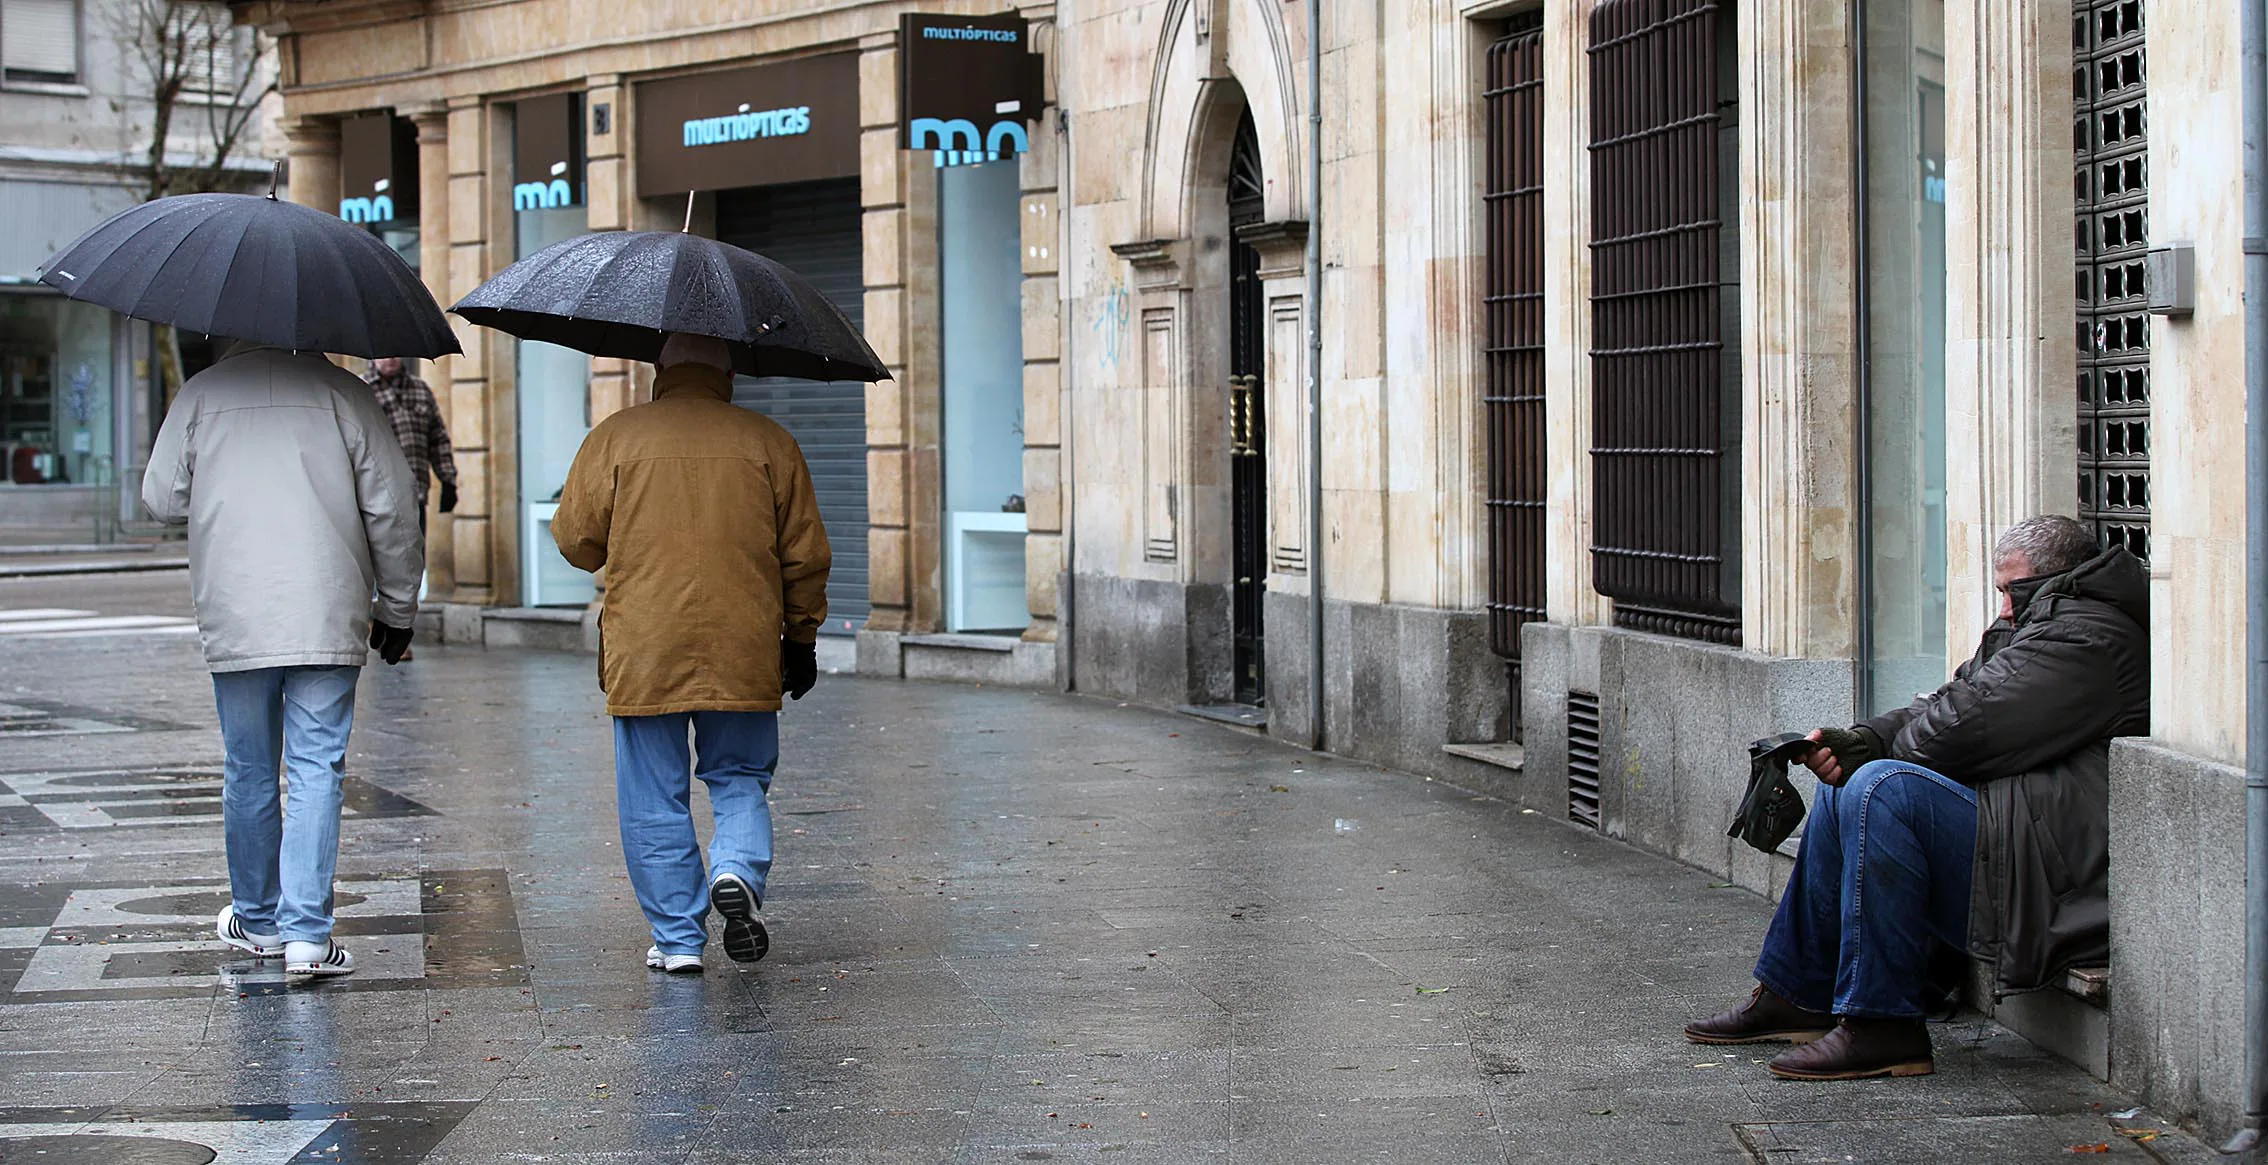 Castilla y León tiene un 22,4% de población en riesgo de pobreza o exclusión social, más de cuatro puntos por debajo de la media